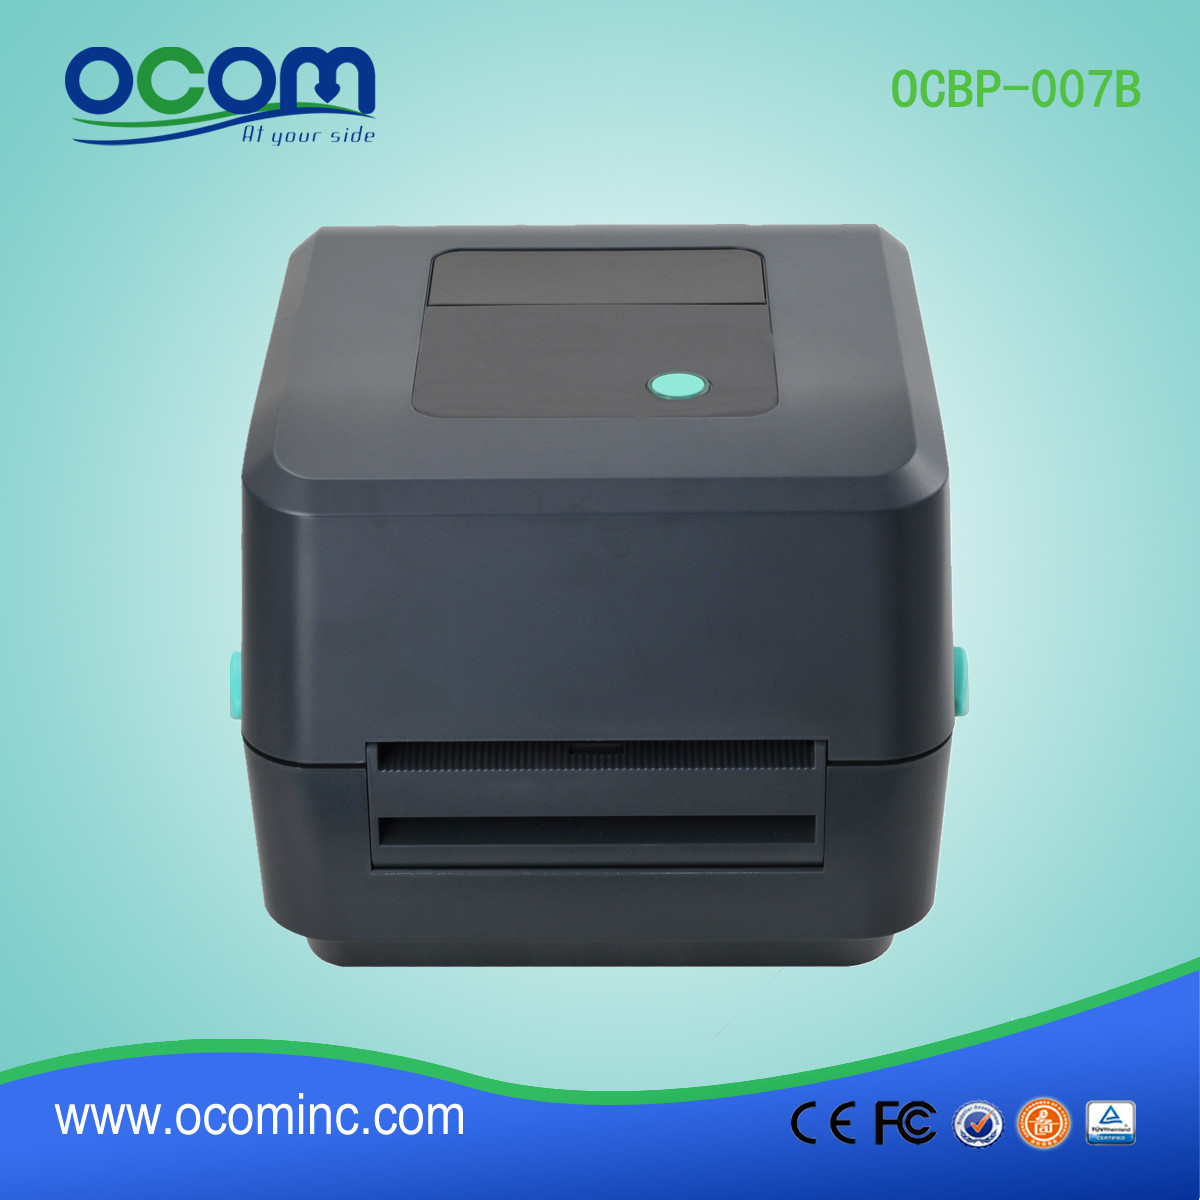 Novo Modelo OCBP-007B Impressora de etiquetas de código de barras térmica direta